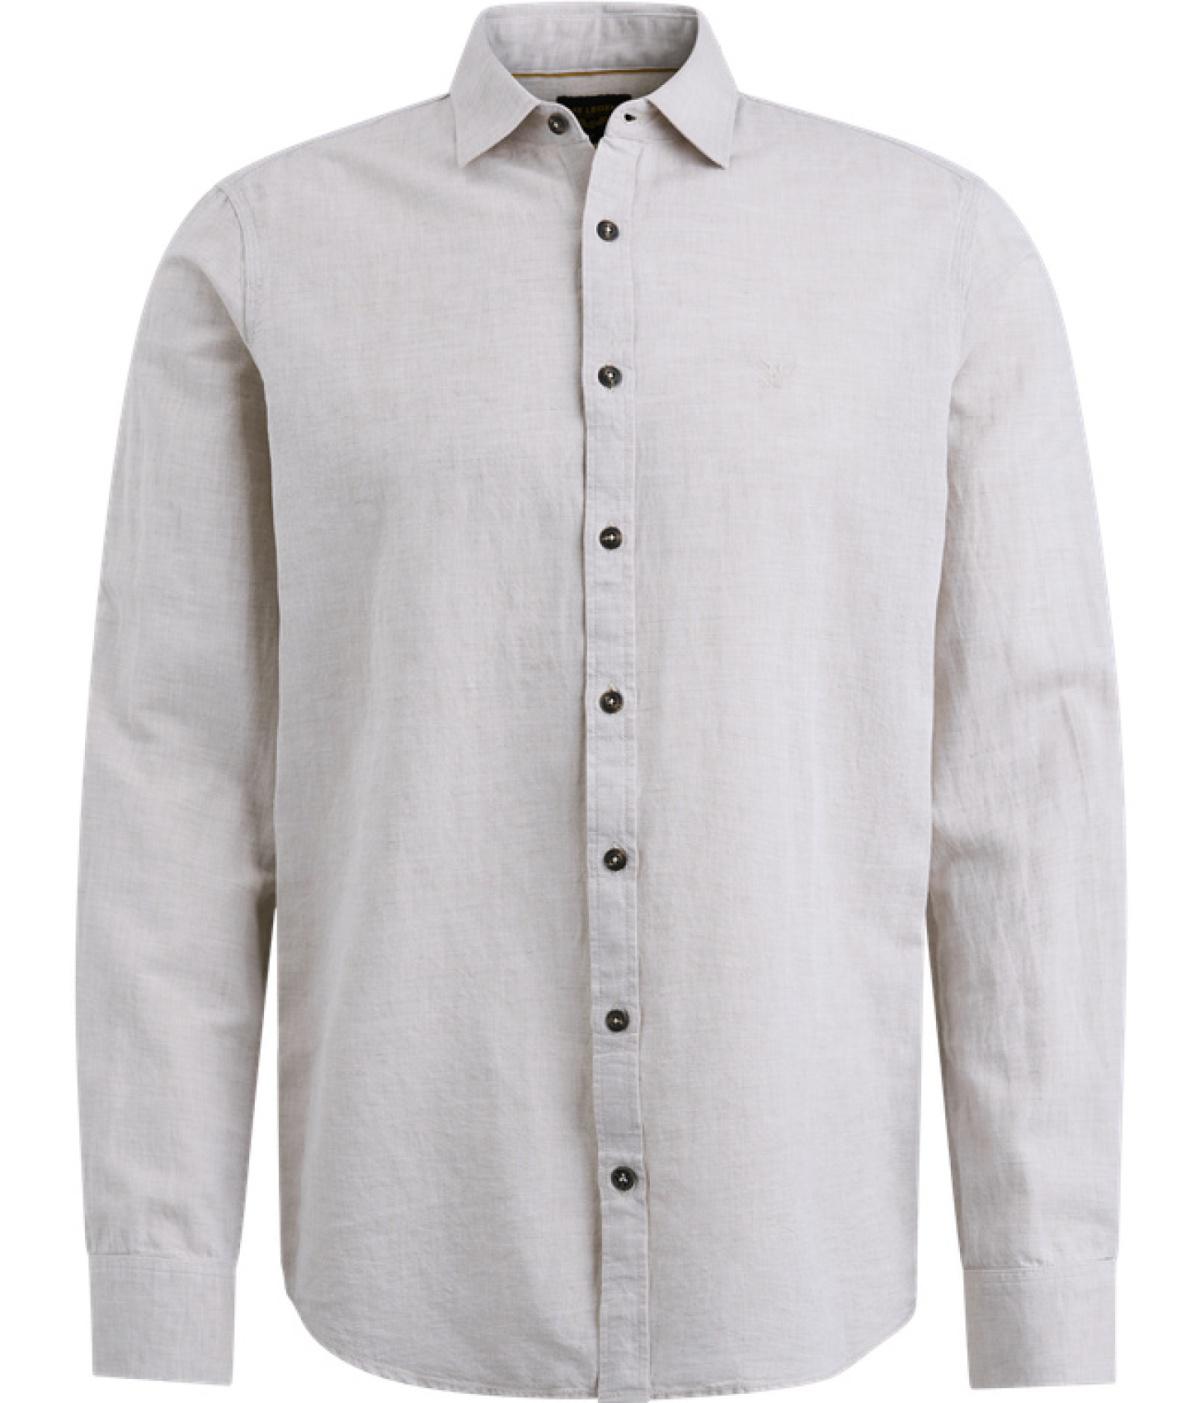 PME Legend Hemden PSI2404200 7144 | Long Sleeve Shirt Ctn Linen